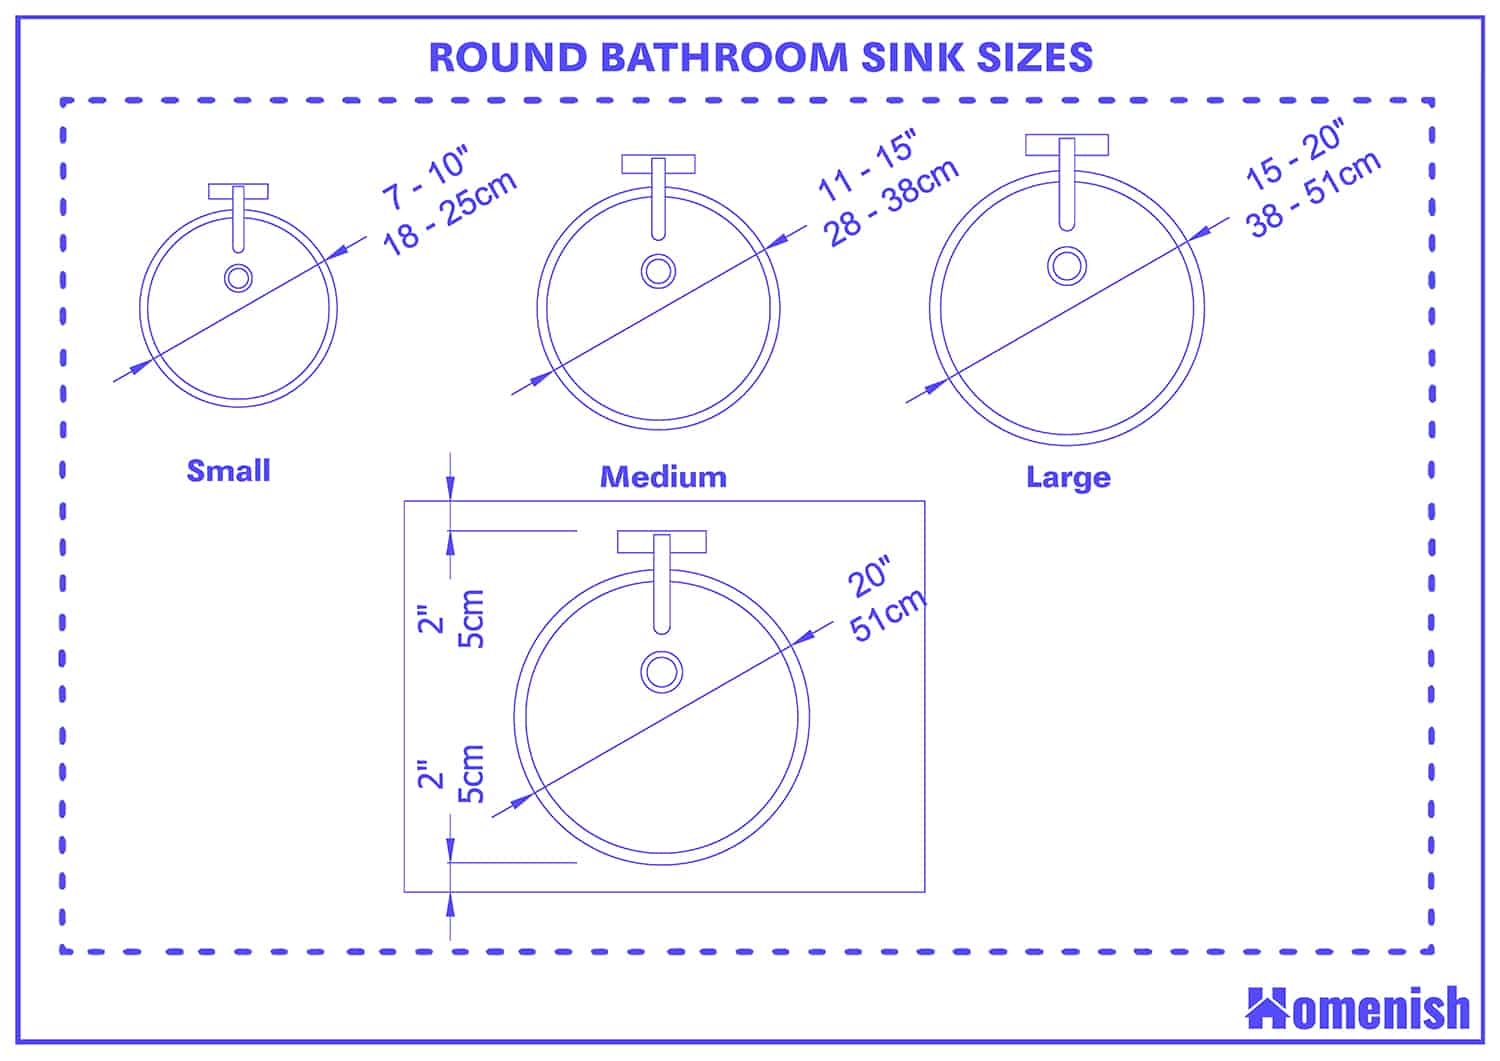 Round Bathroom Sink Sizes